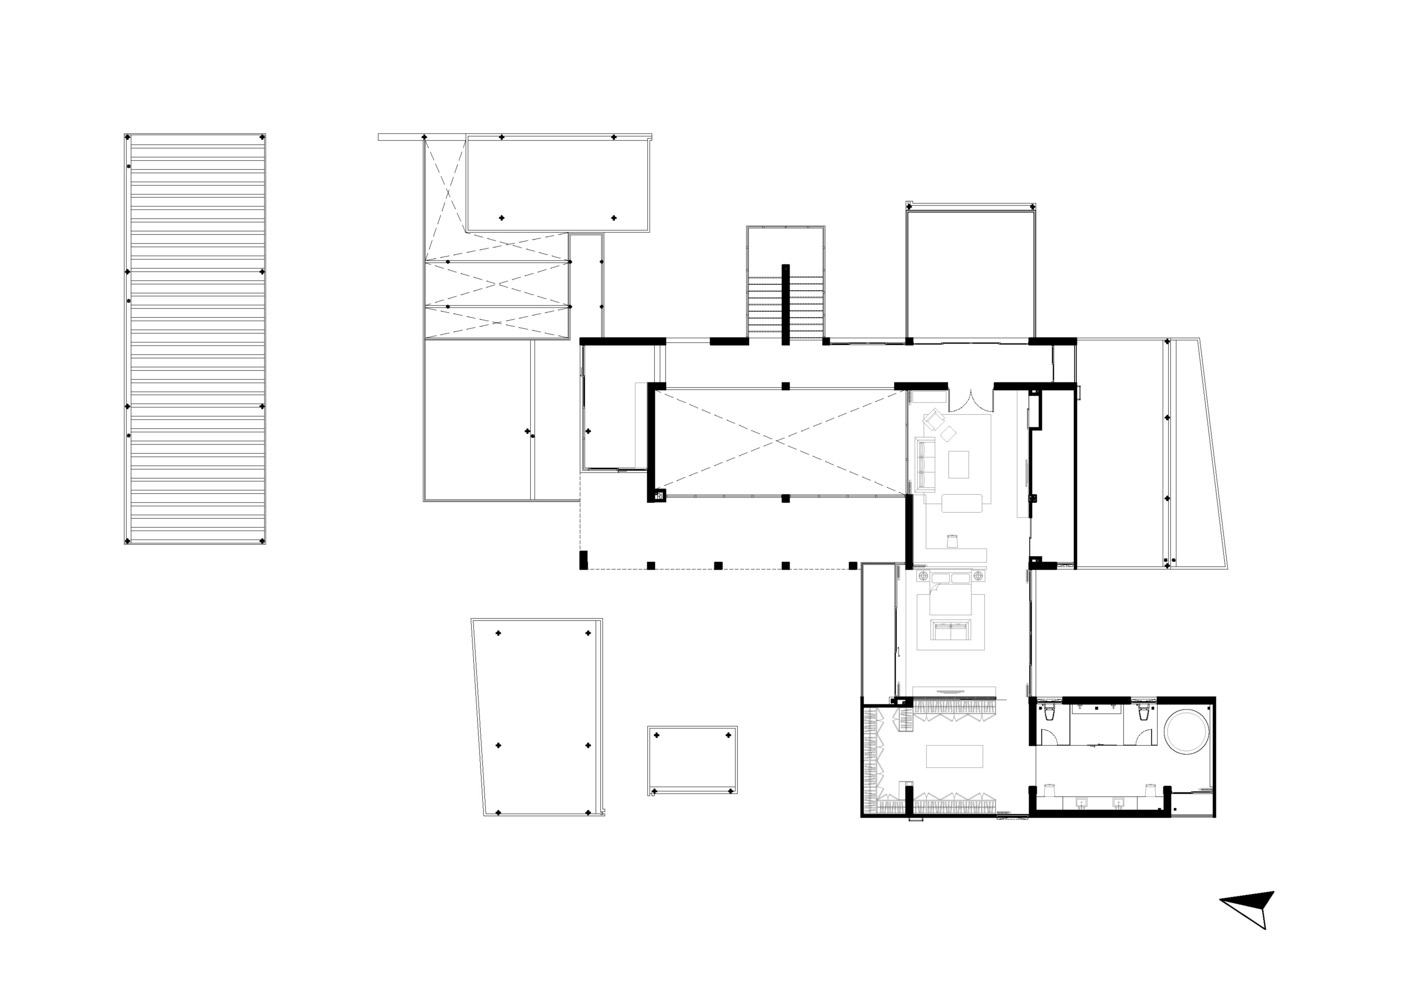 FLAT12x,别墅设计案例,现代风格别墅设计,国外别墅设计,1000㎡,景观别墅,庭院别墅,曼谷